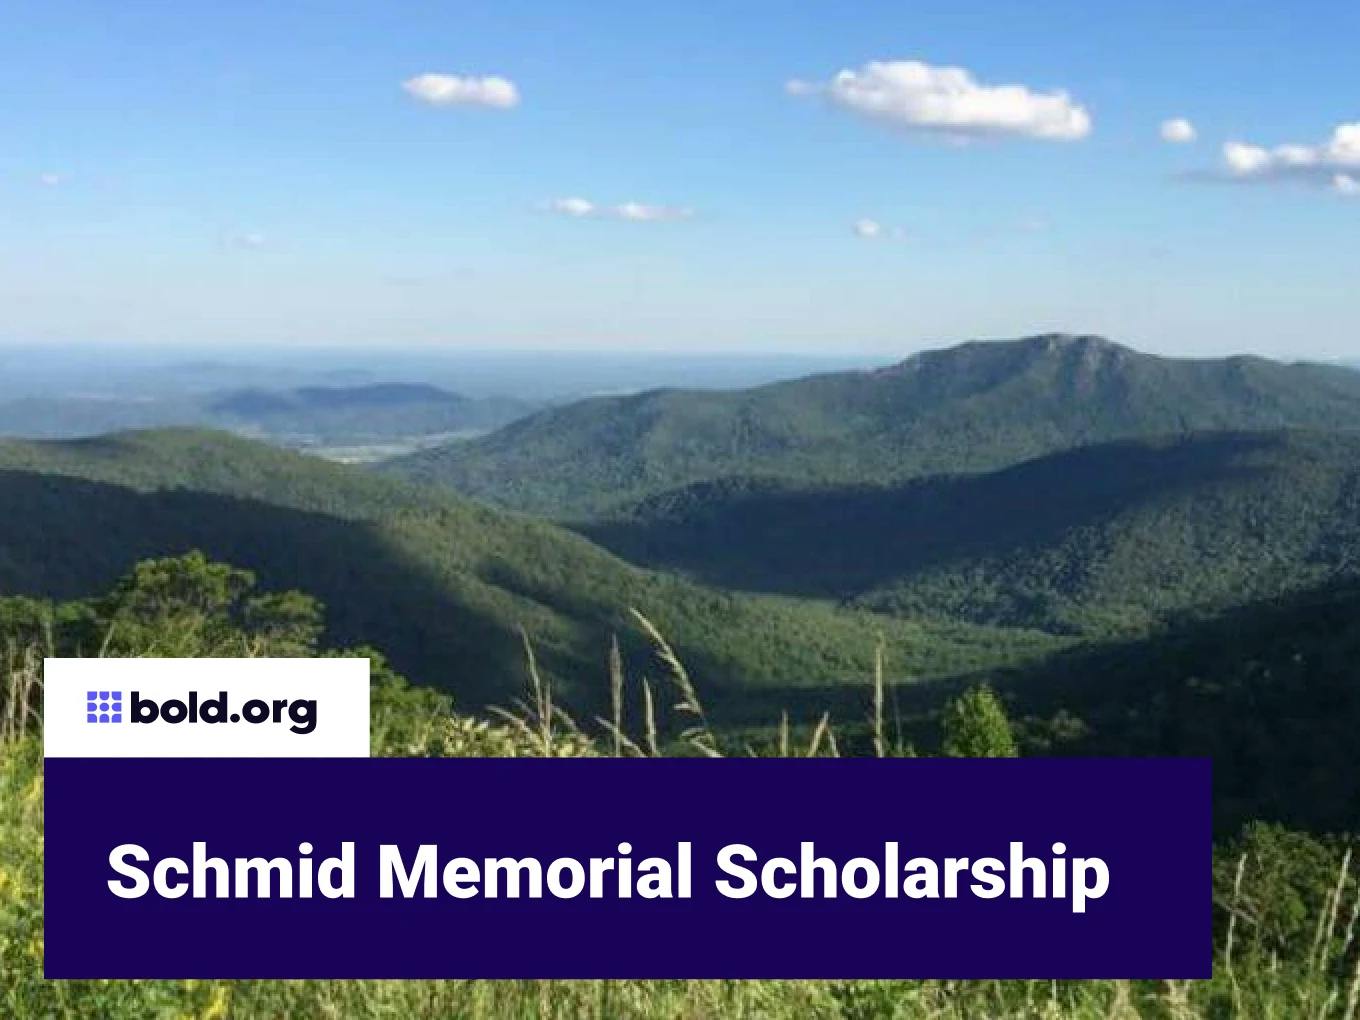 Schmid Memorial Scholarship